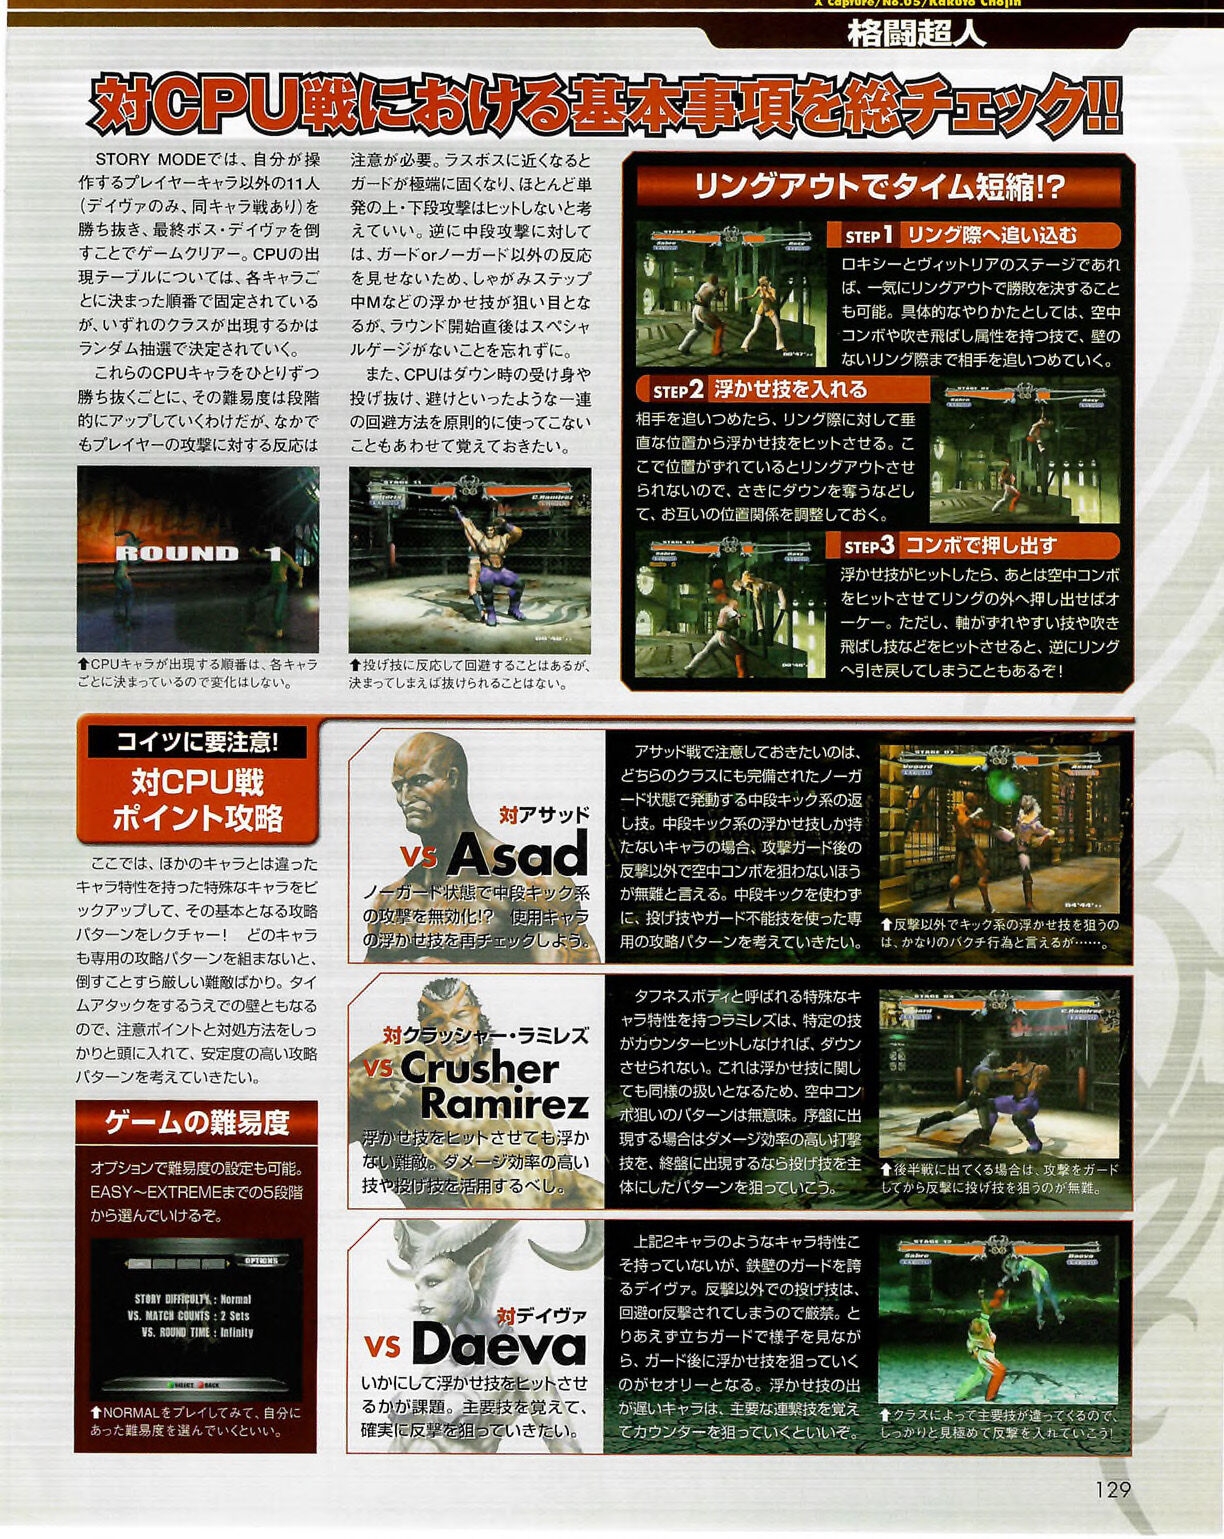 Famitsu_Xbox_2003-04_jp2 128